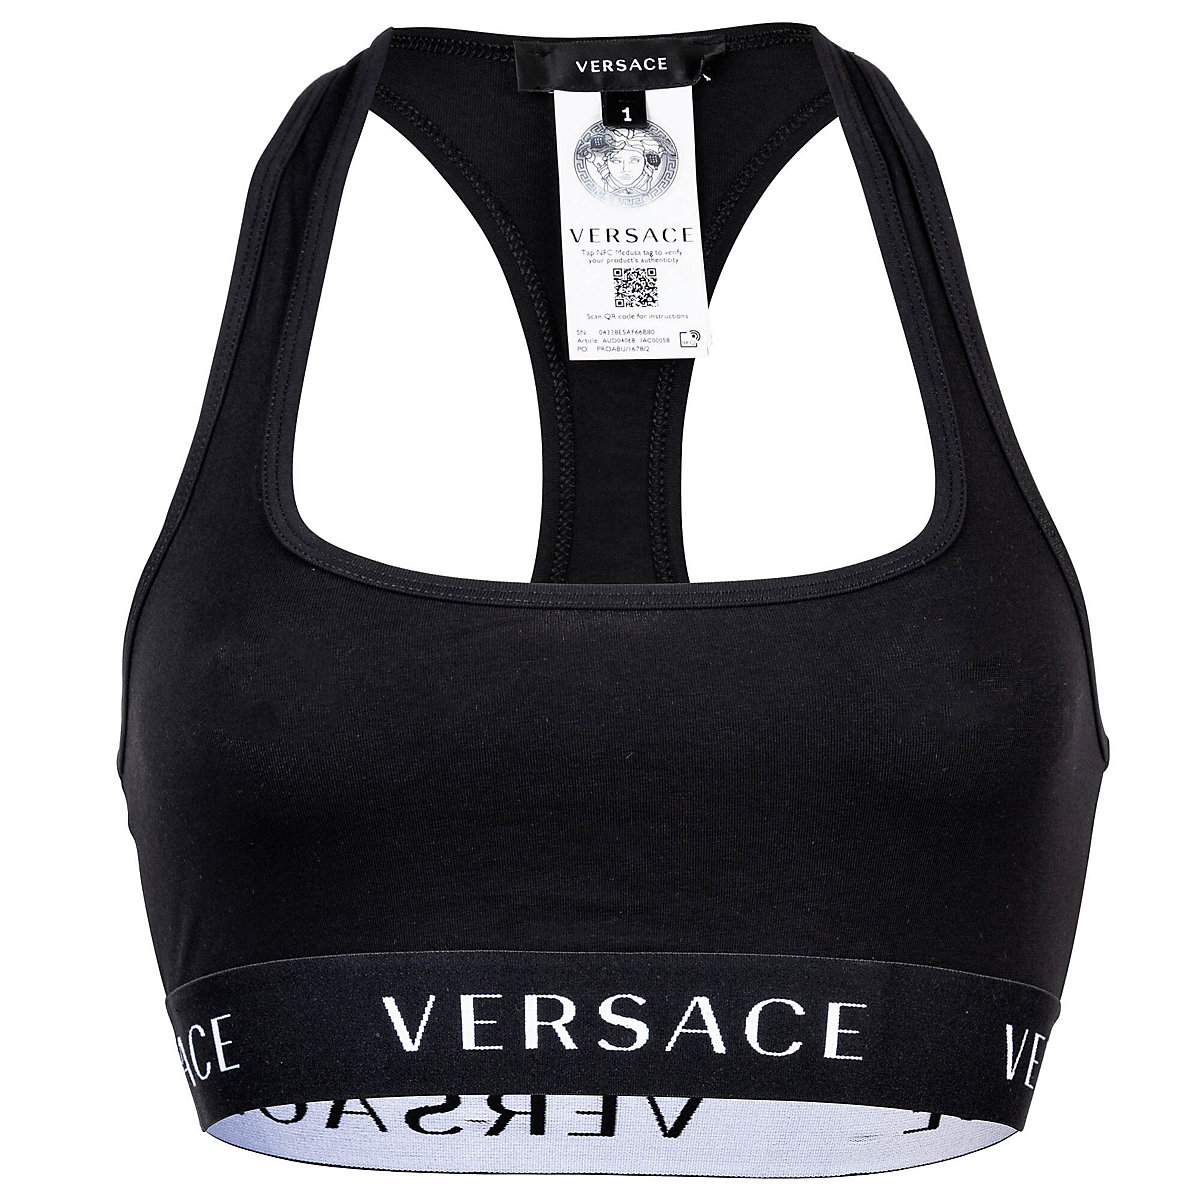 Versace Jeans Versace VERSACE Damen Bustier Unterwäsche Bralette Bra Baumwolle Logobund einfarbig Bustiers schwarz